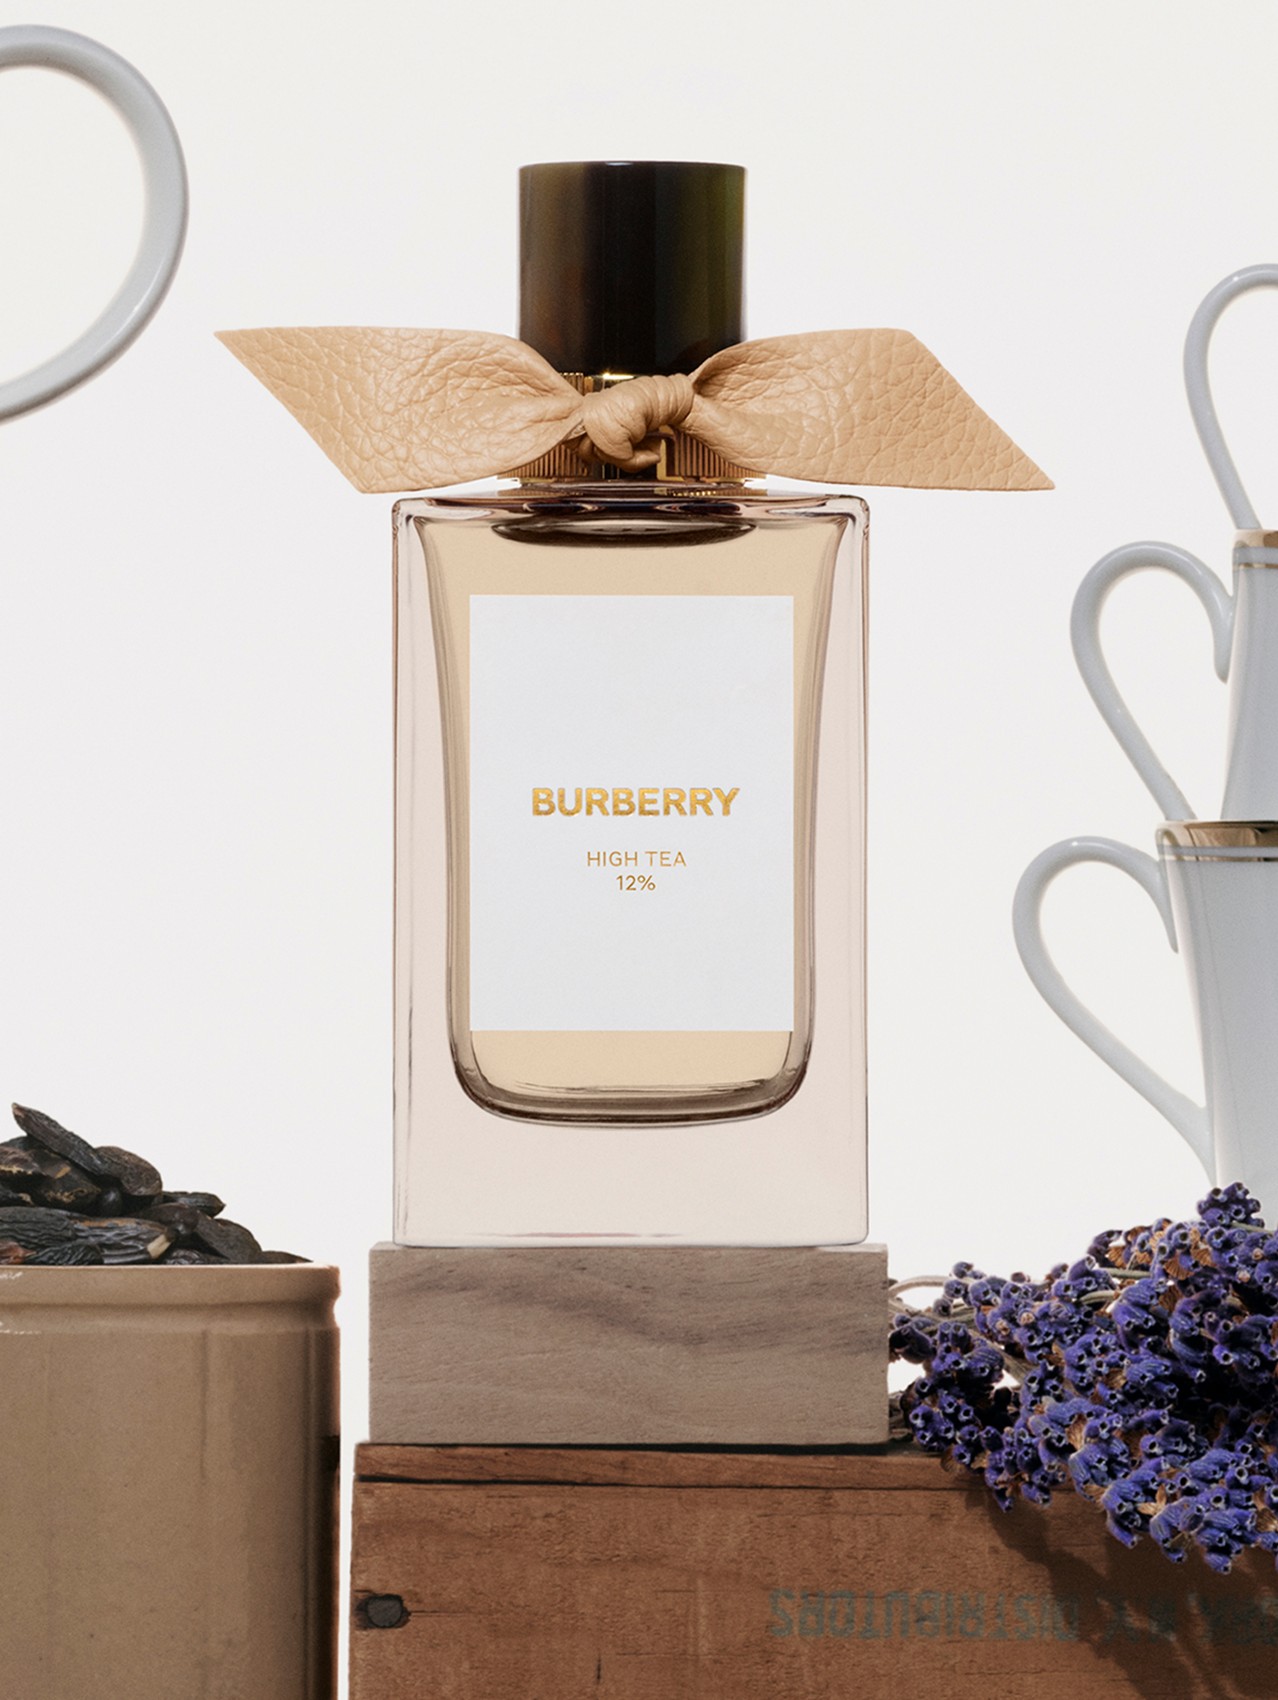 Burberry Signatures Eau de Parfum de 100 ml - High Tea